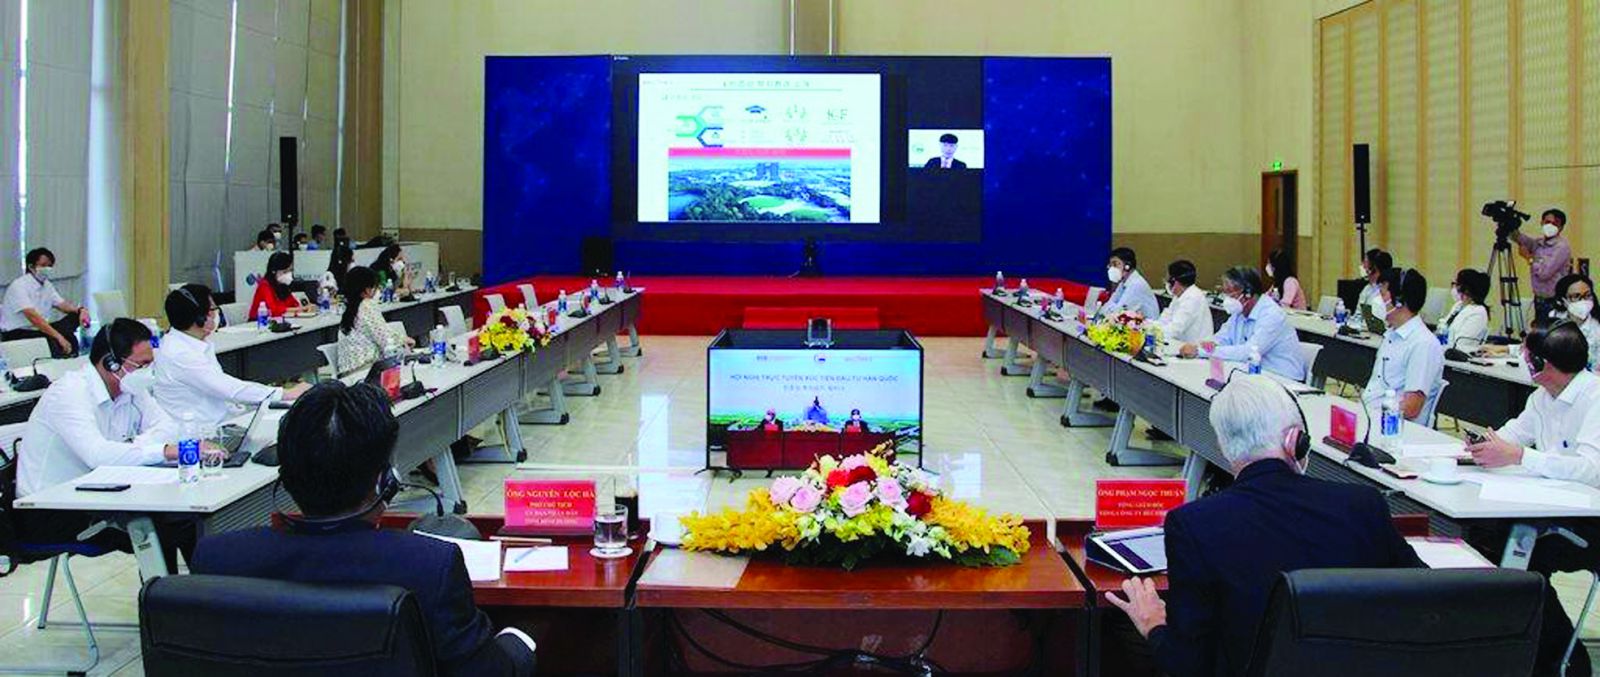  Hội nghị trực tuyến xúc tiến đầu tư Hàn Quốc tại điểm cầu Bình Dương ngày 9/11/2021.